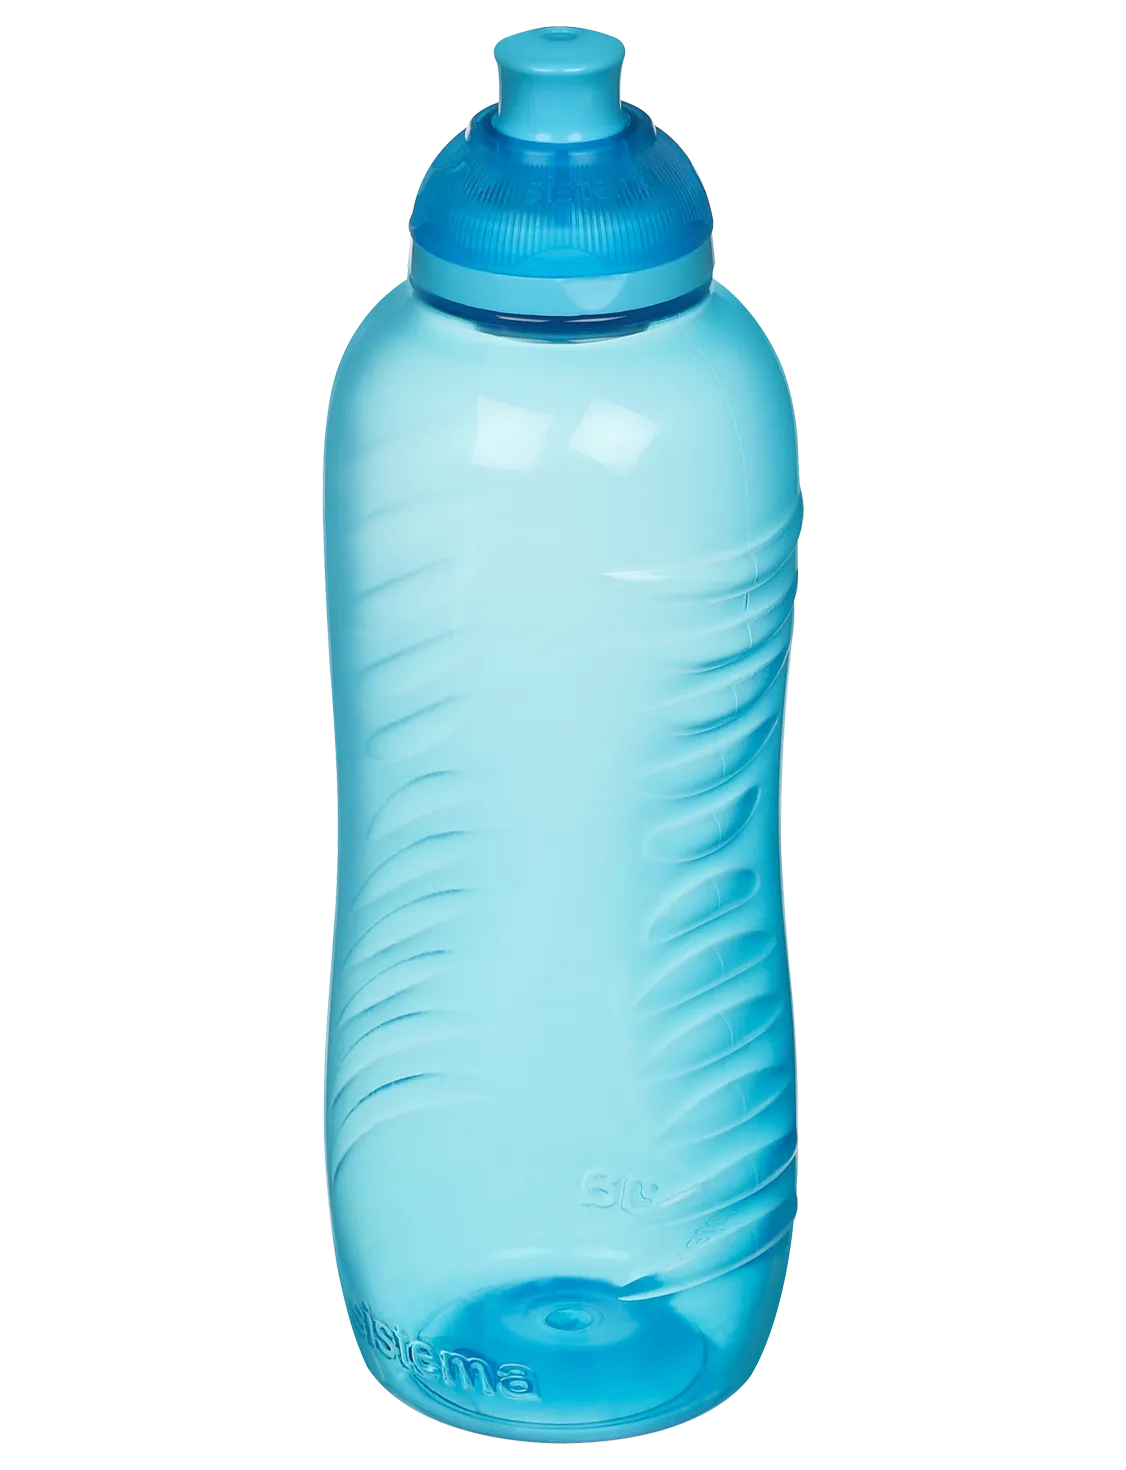 בקבוק משקה בנפח 460 מ"ל - סיסטמה Sistema 